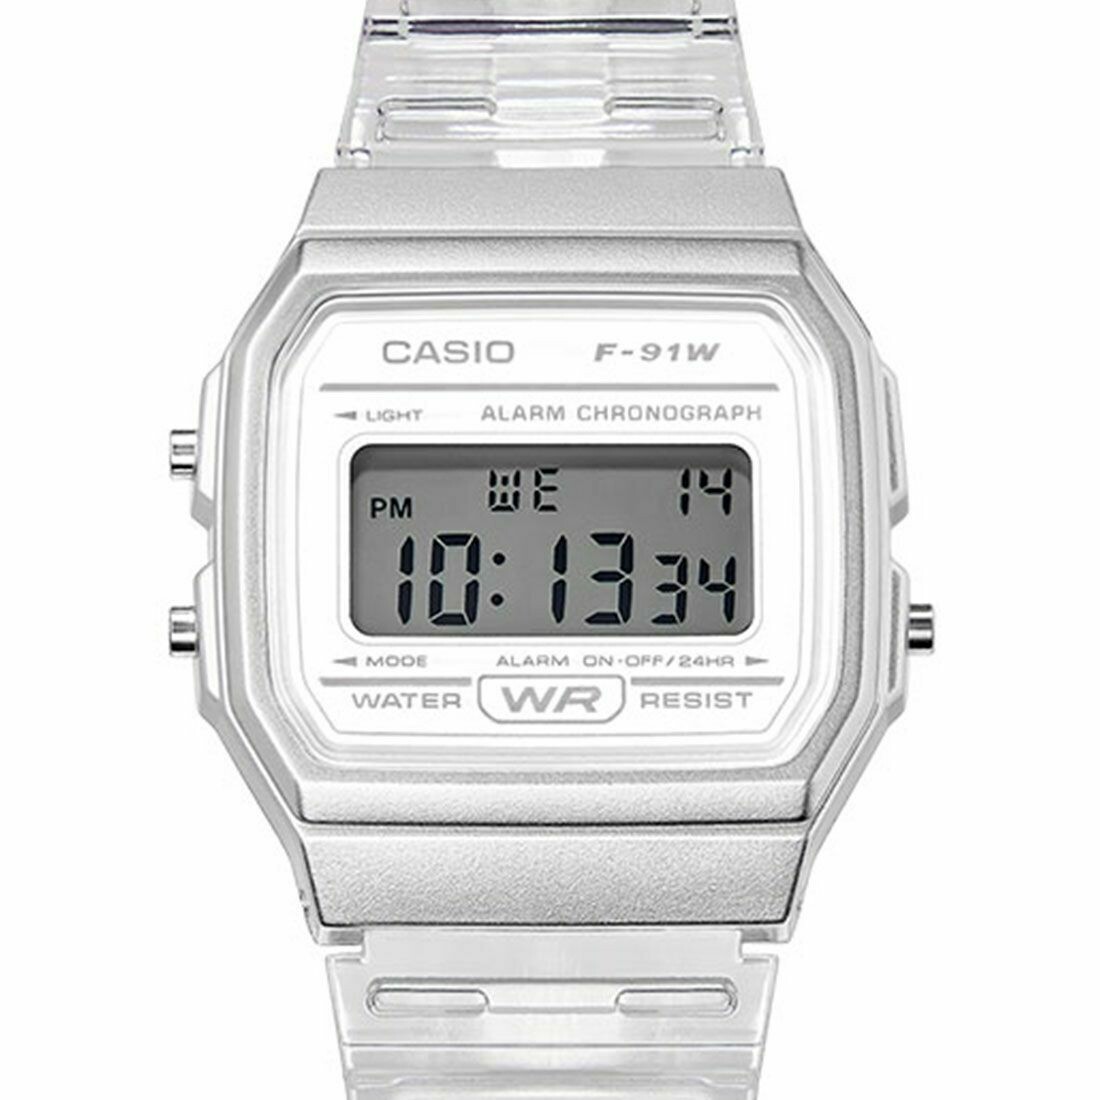 Reloj Clásico Vintage Informal Casio F91WS-7 blanco correa resina 7 años batería alarma cronómetro